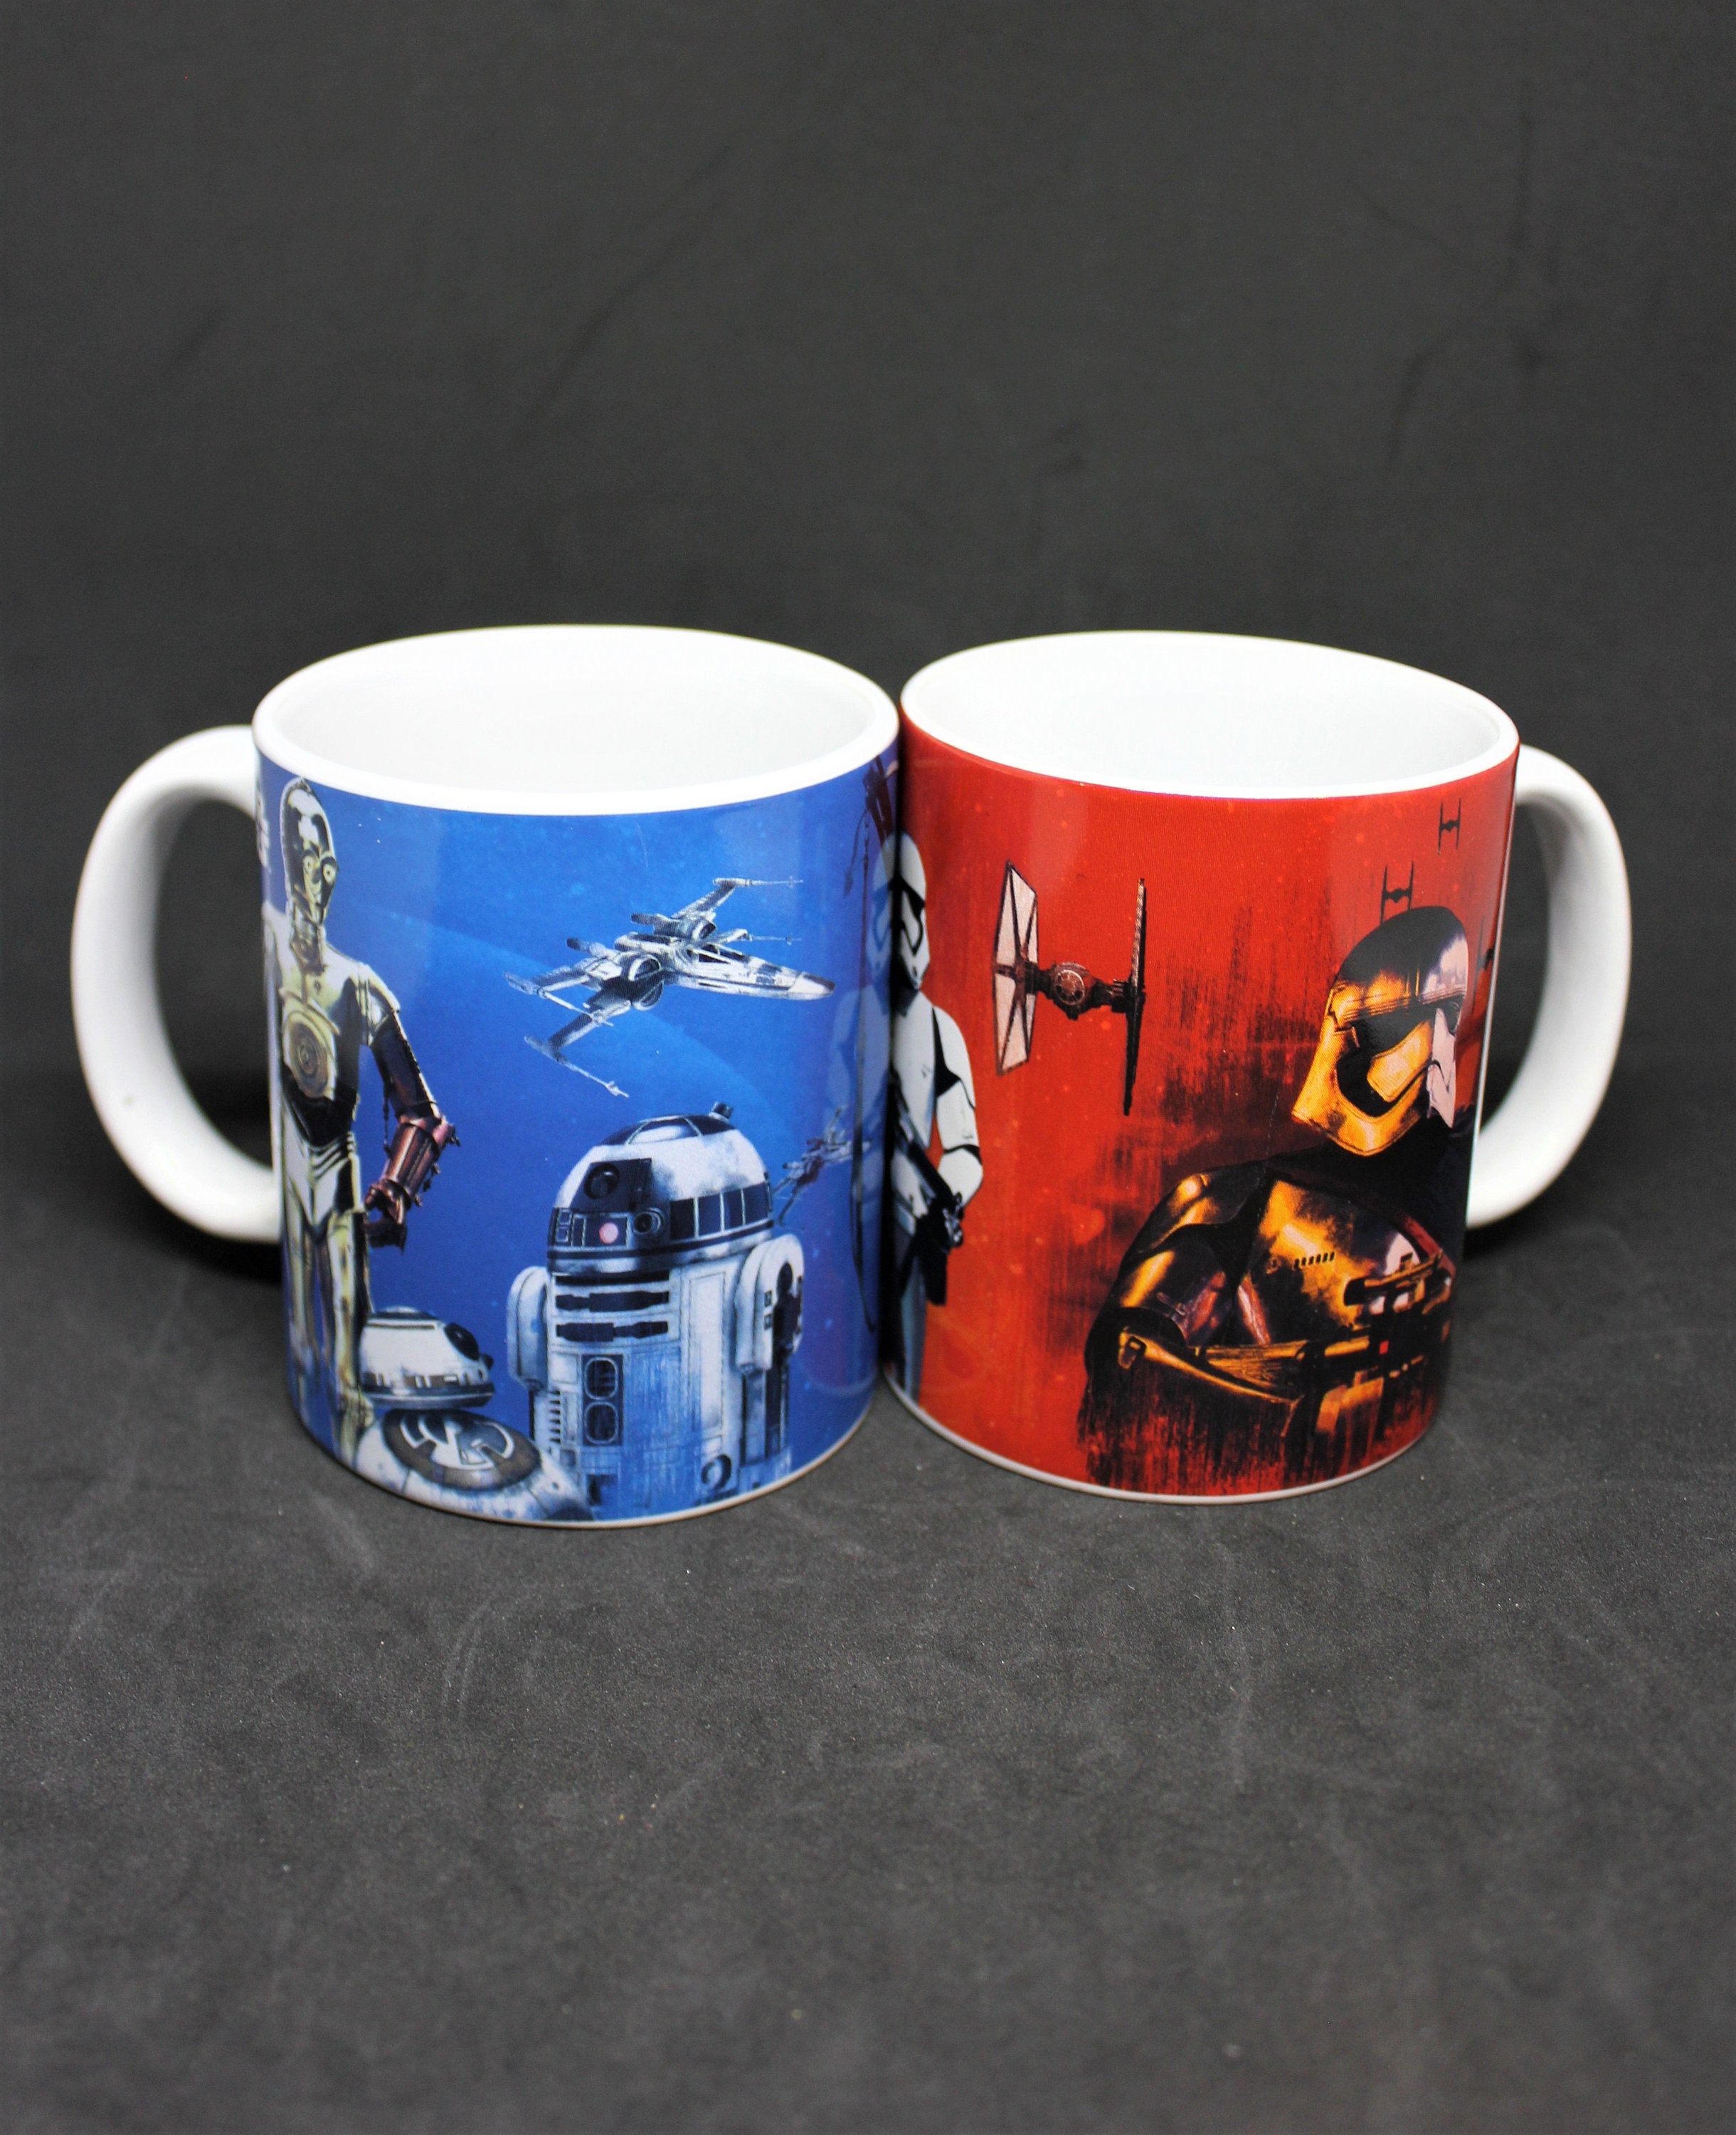 R2D2 - Star Wars Art - Purple Coffee Mug by Studio Grafiikka - Pixels